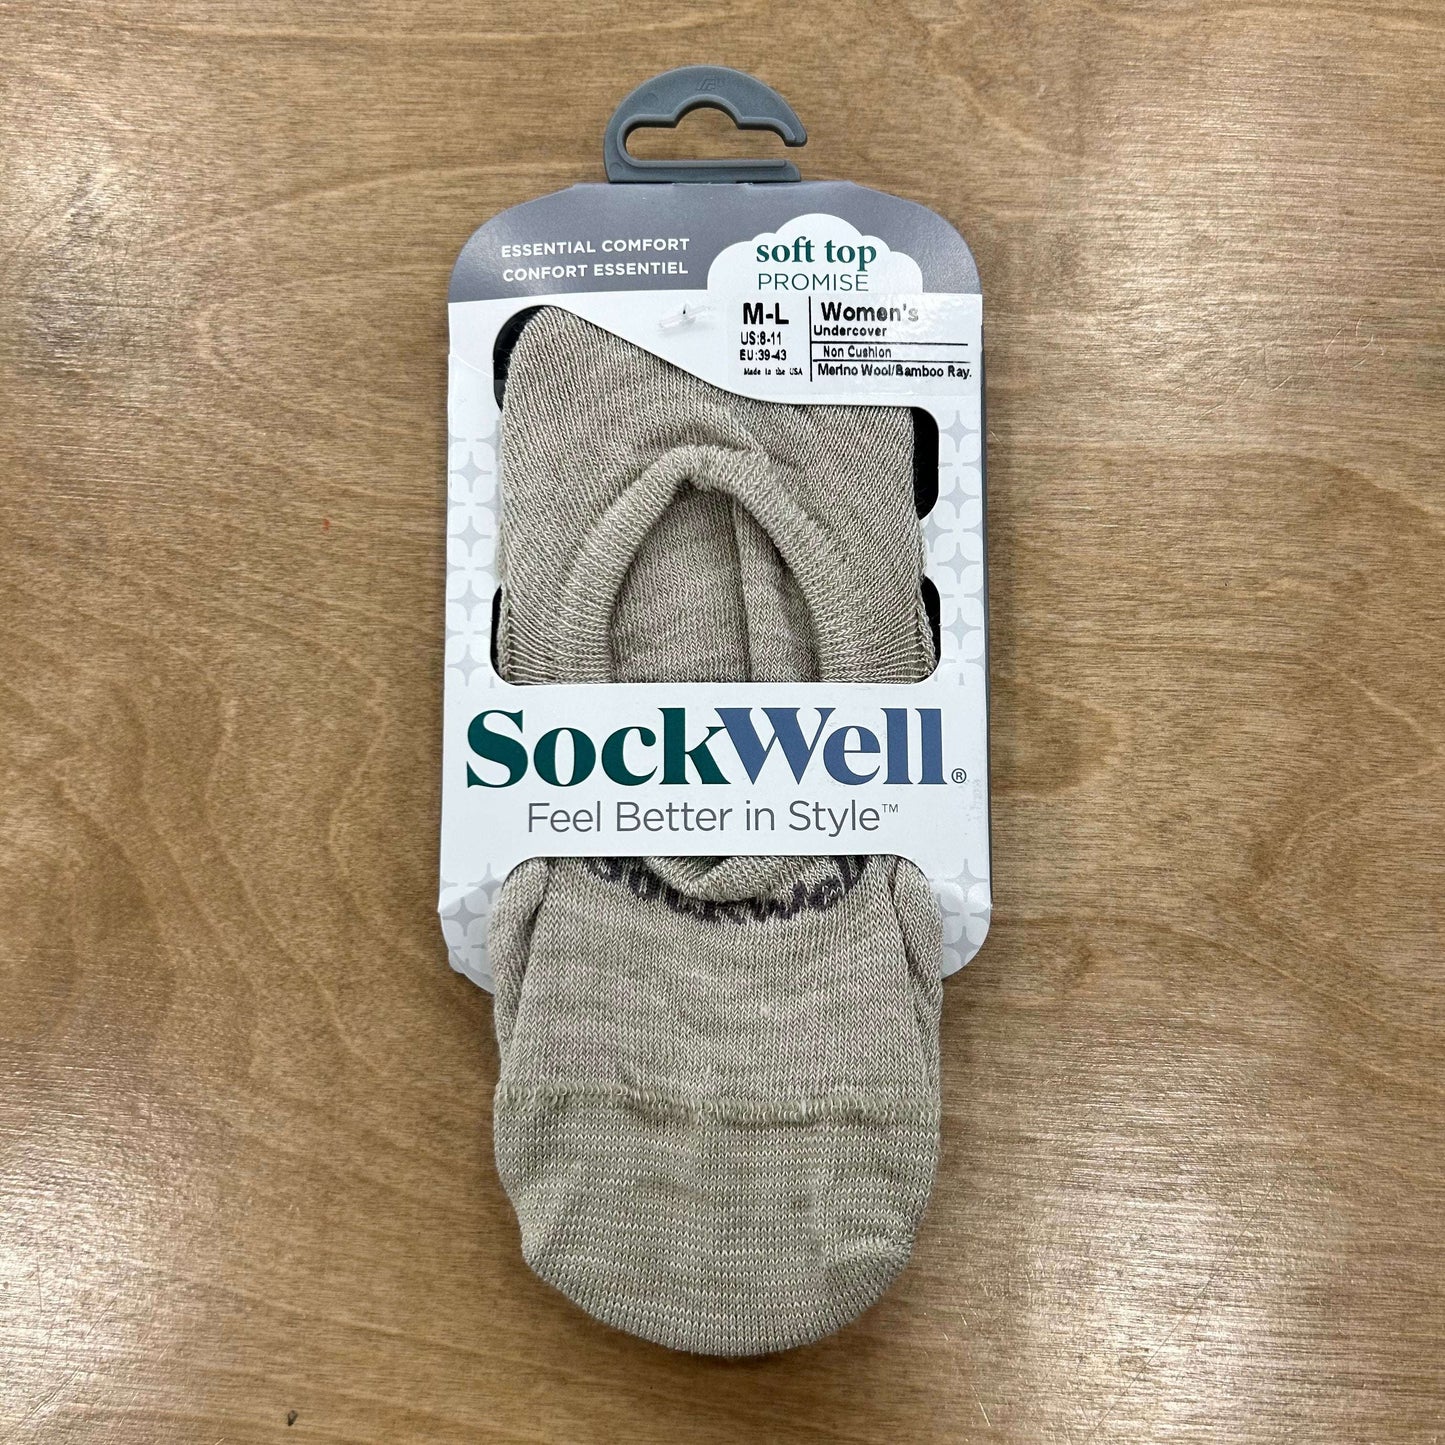 Sockwell - Undercover, socks, SOCKWELL, Plum Bottom